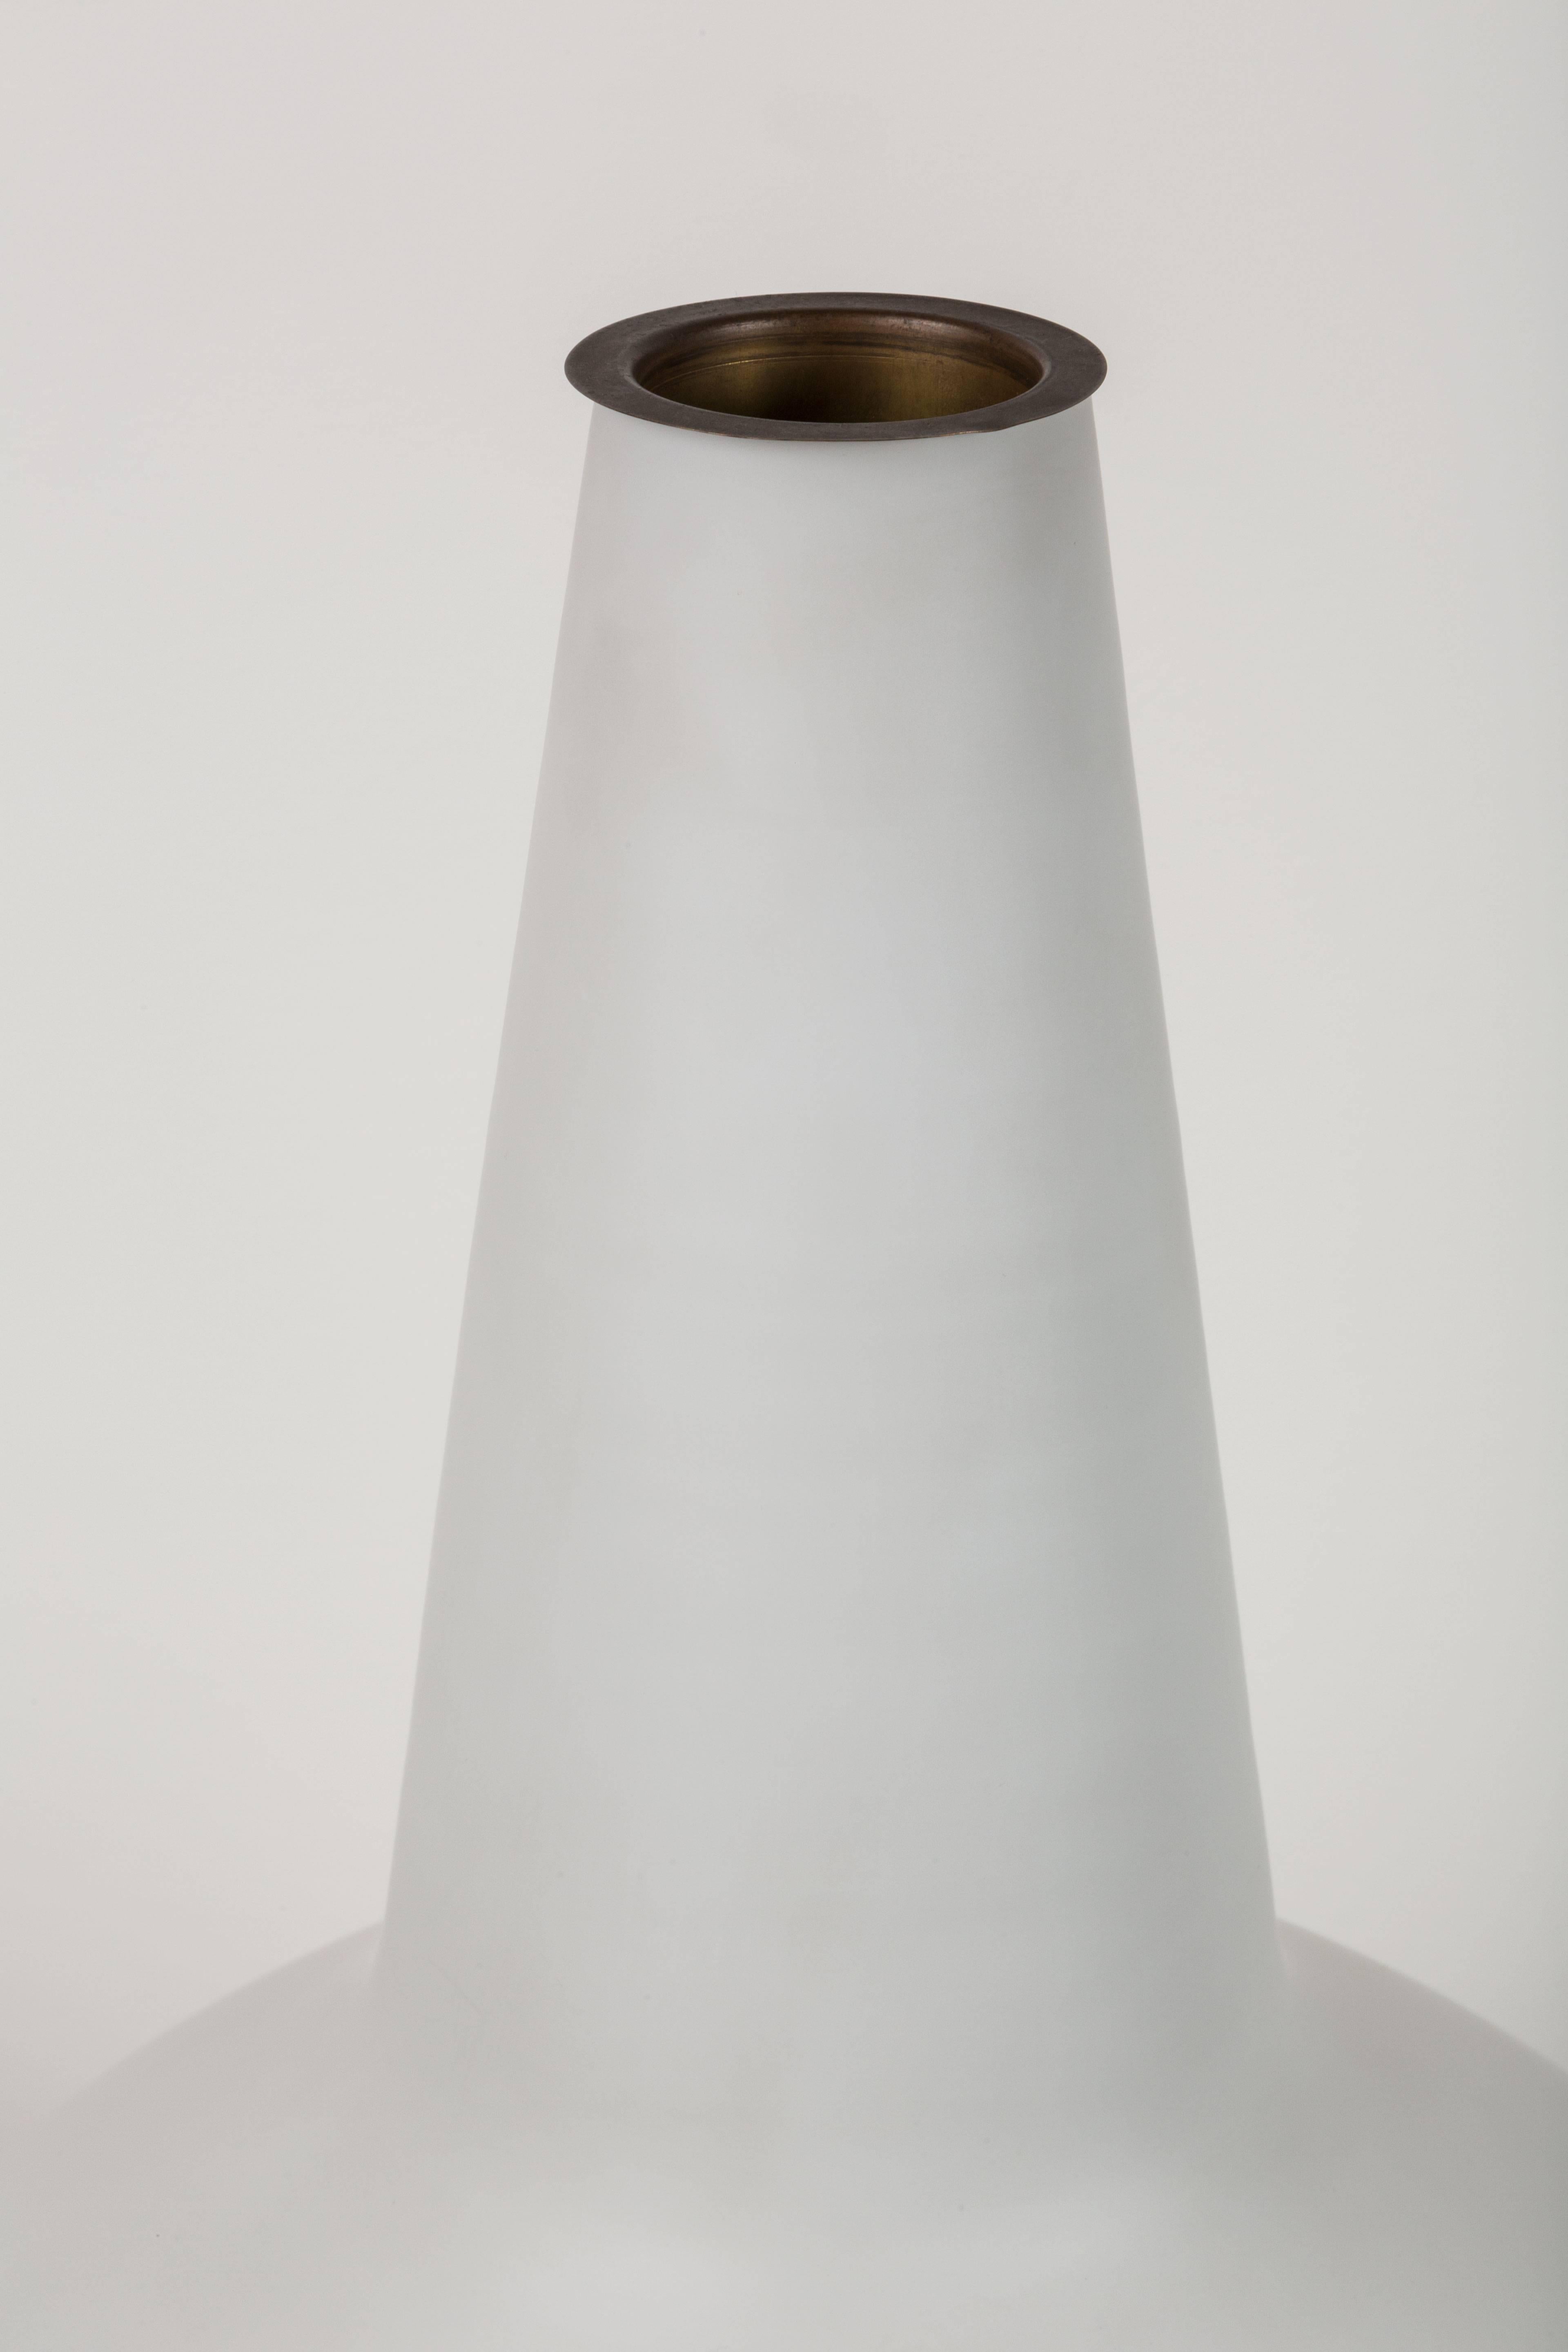 Pair of Fontana Arte Vase Lamps 2